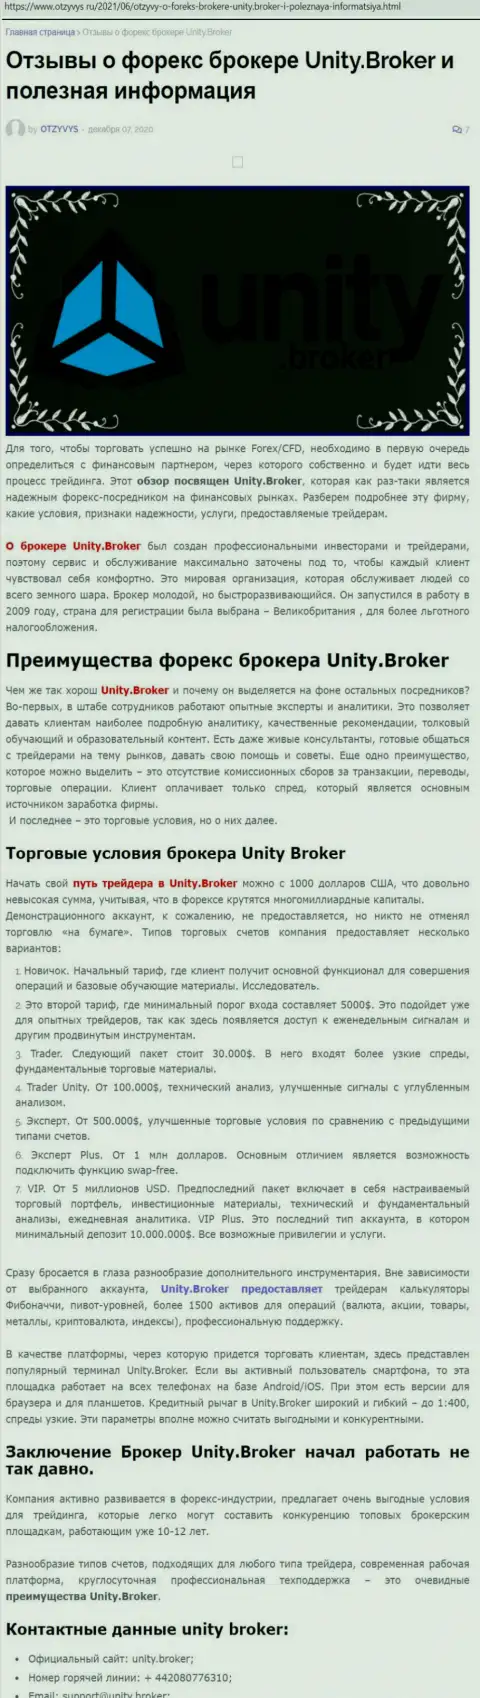 Статья об forex-организации Unity Broker на интернет-портале отзивис ру